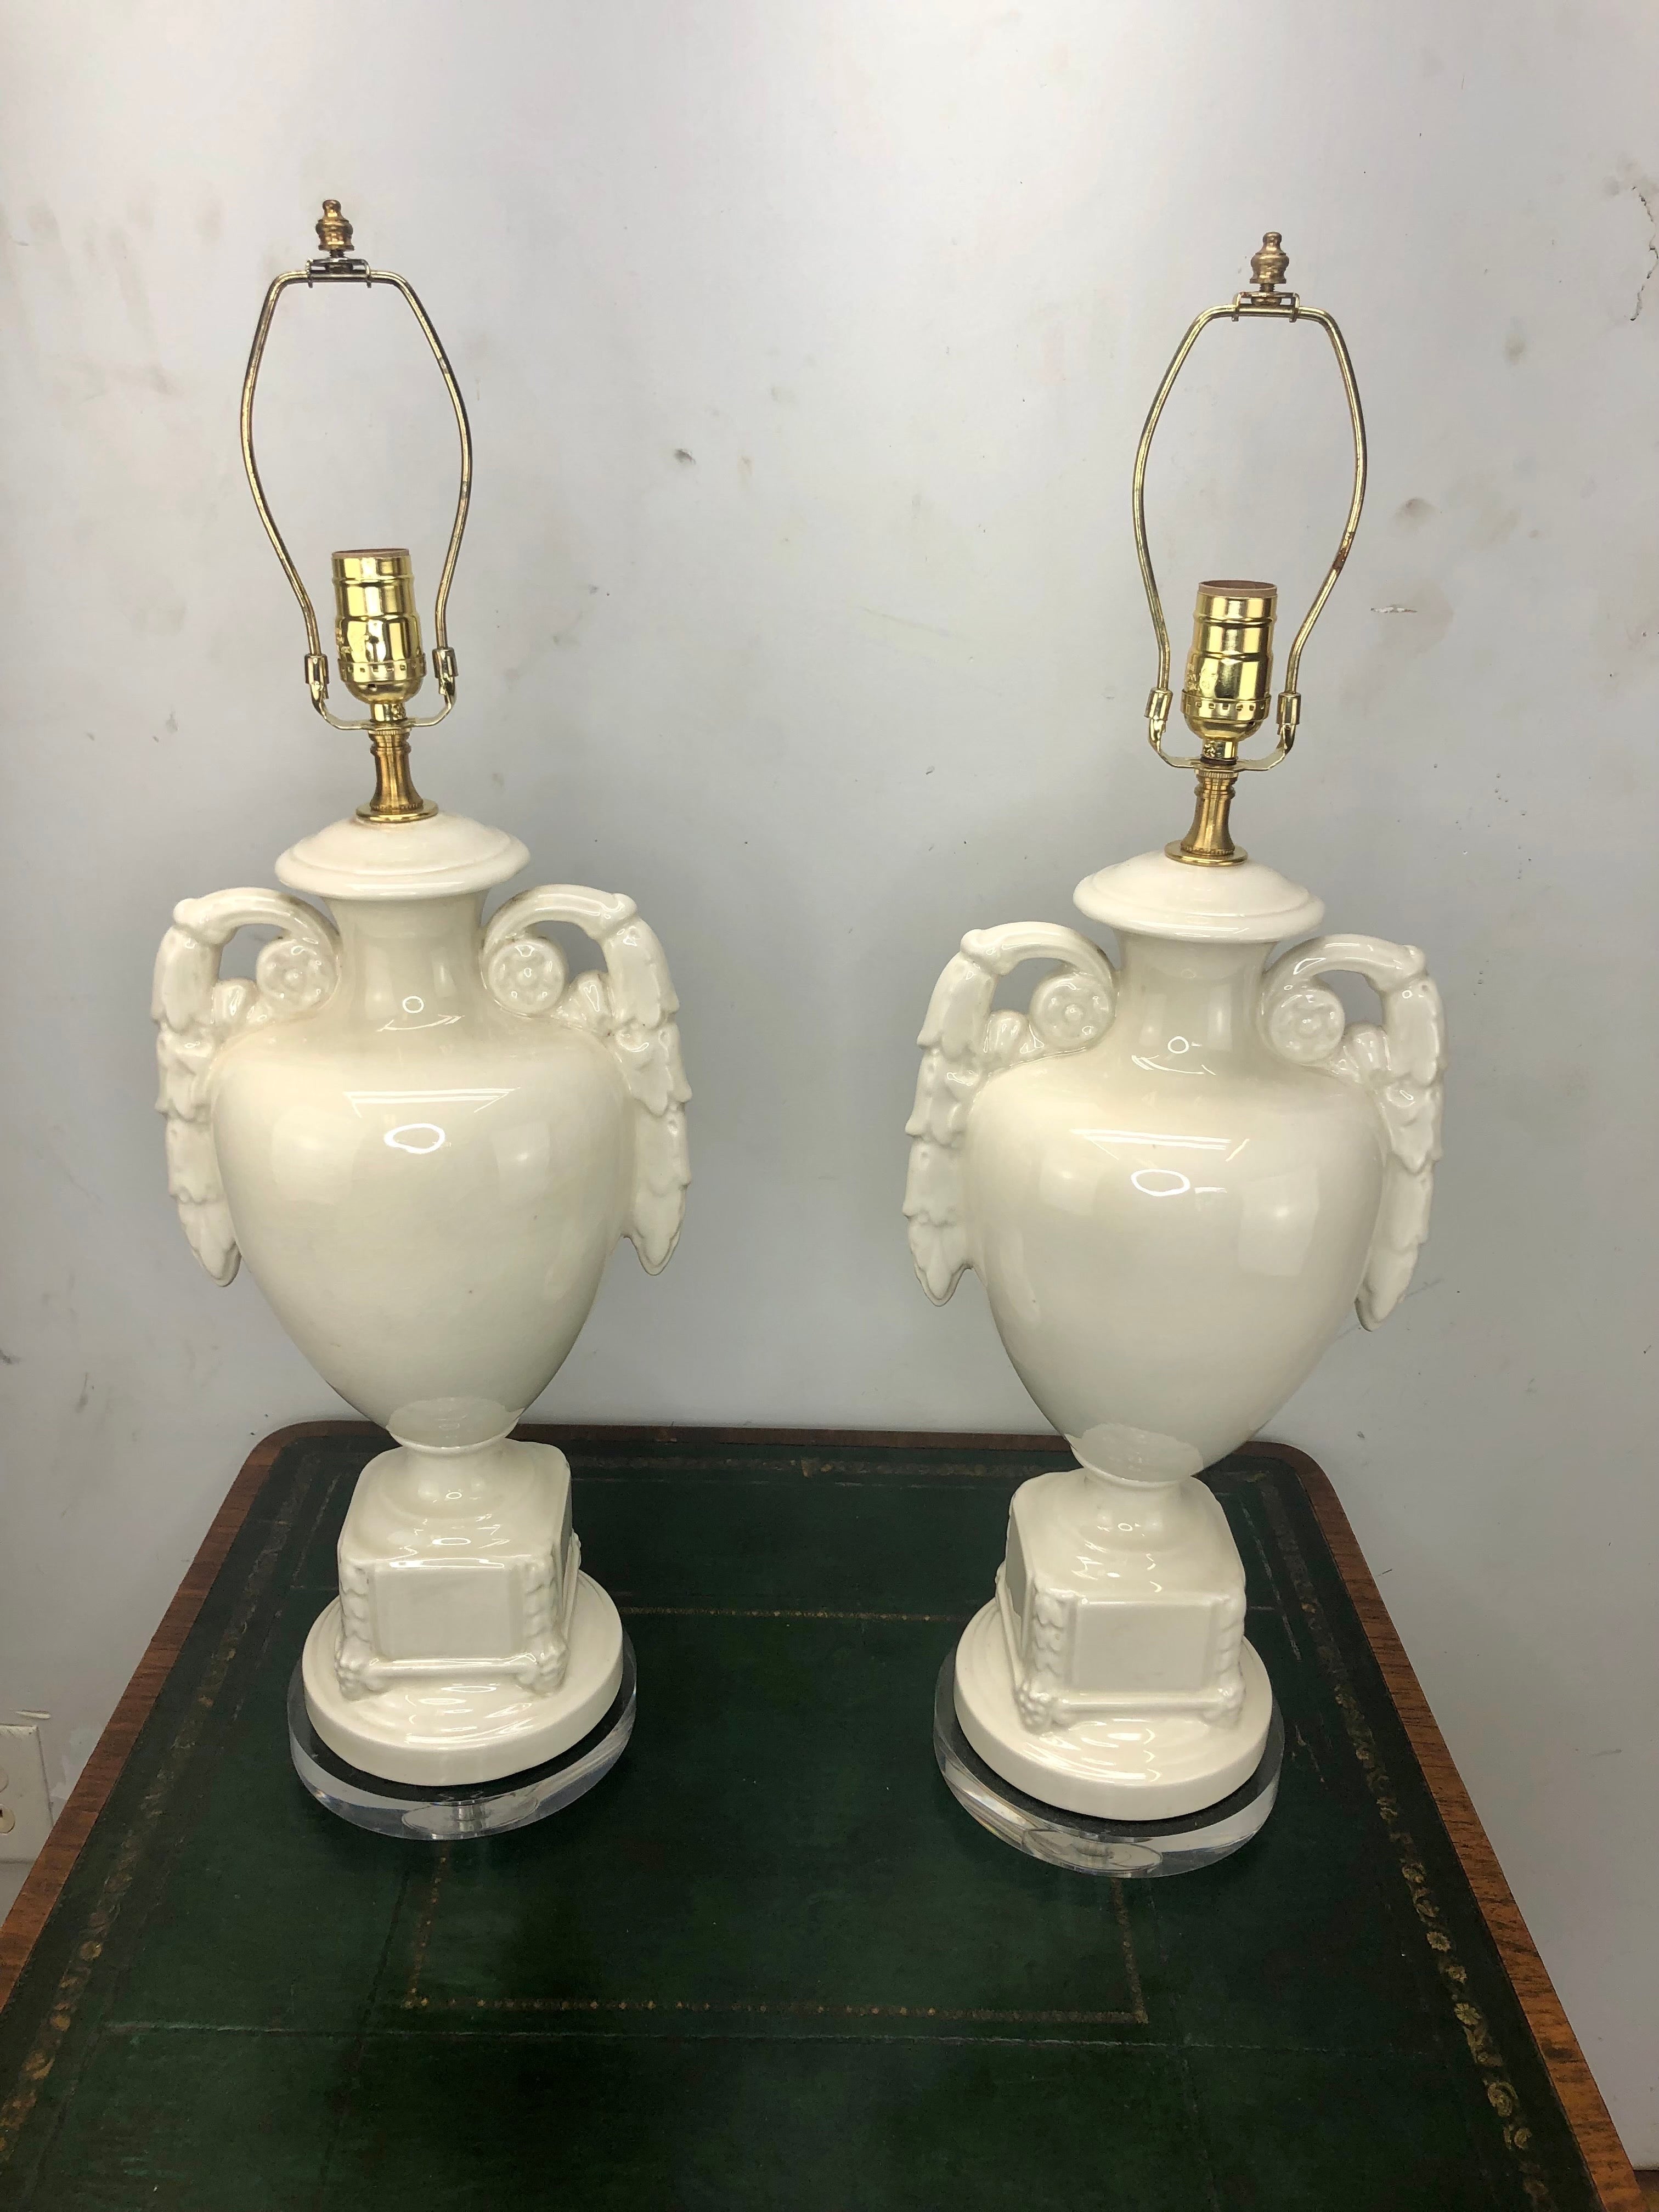 Paire de lampes Urne en céramique émaillée italienne vintage. Ces lampes en céramique émaillée blanche ont de nouveaux socles en lucite et ont été nouvellement câblées, avec de nouvelles douilles à 3 voies.